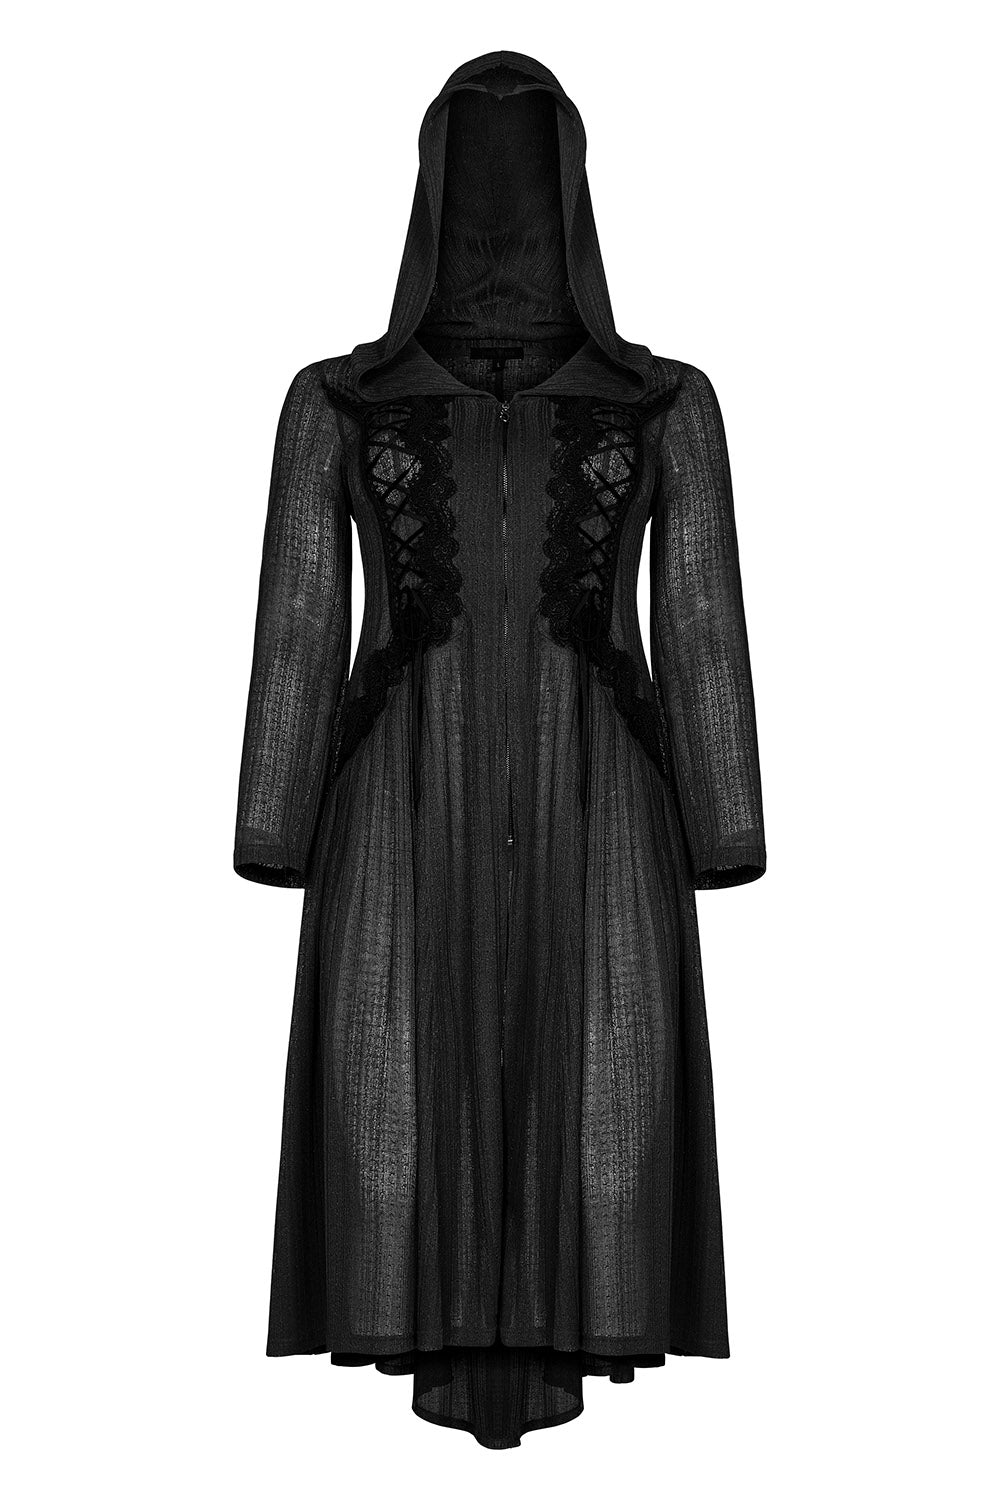 Gypsy Curse Gothic Coat